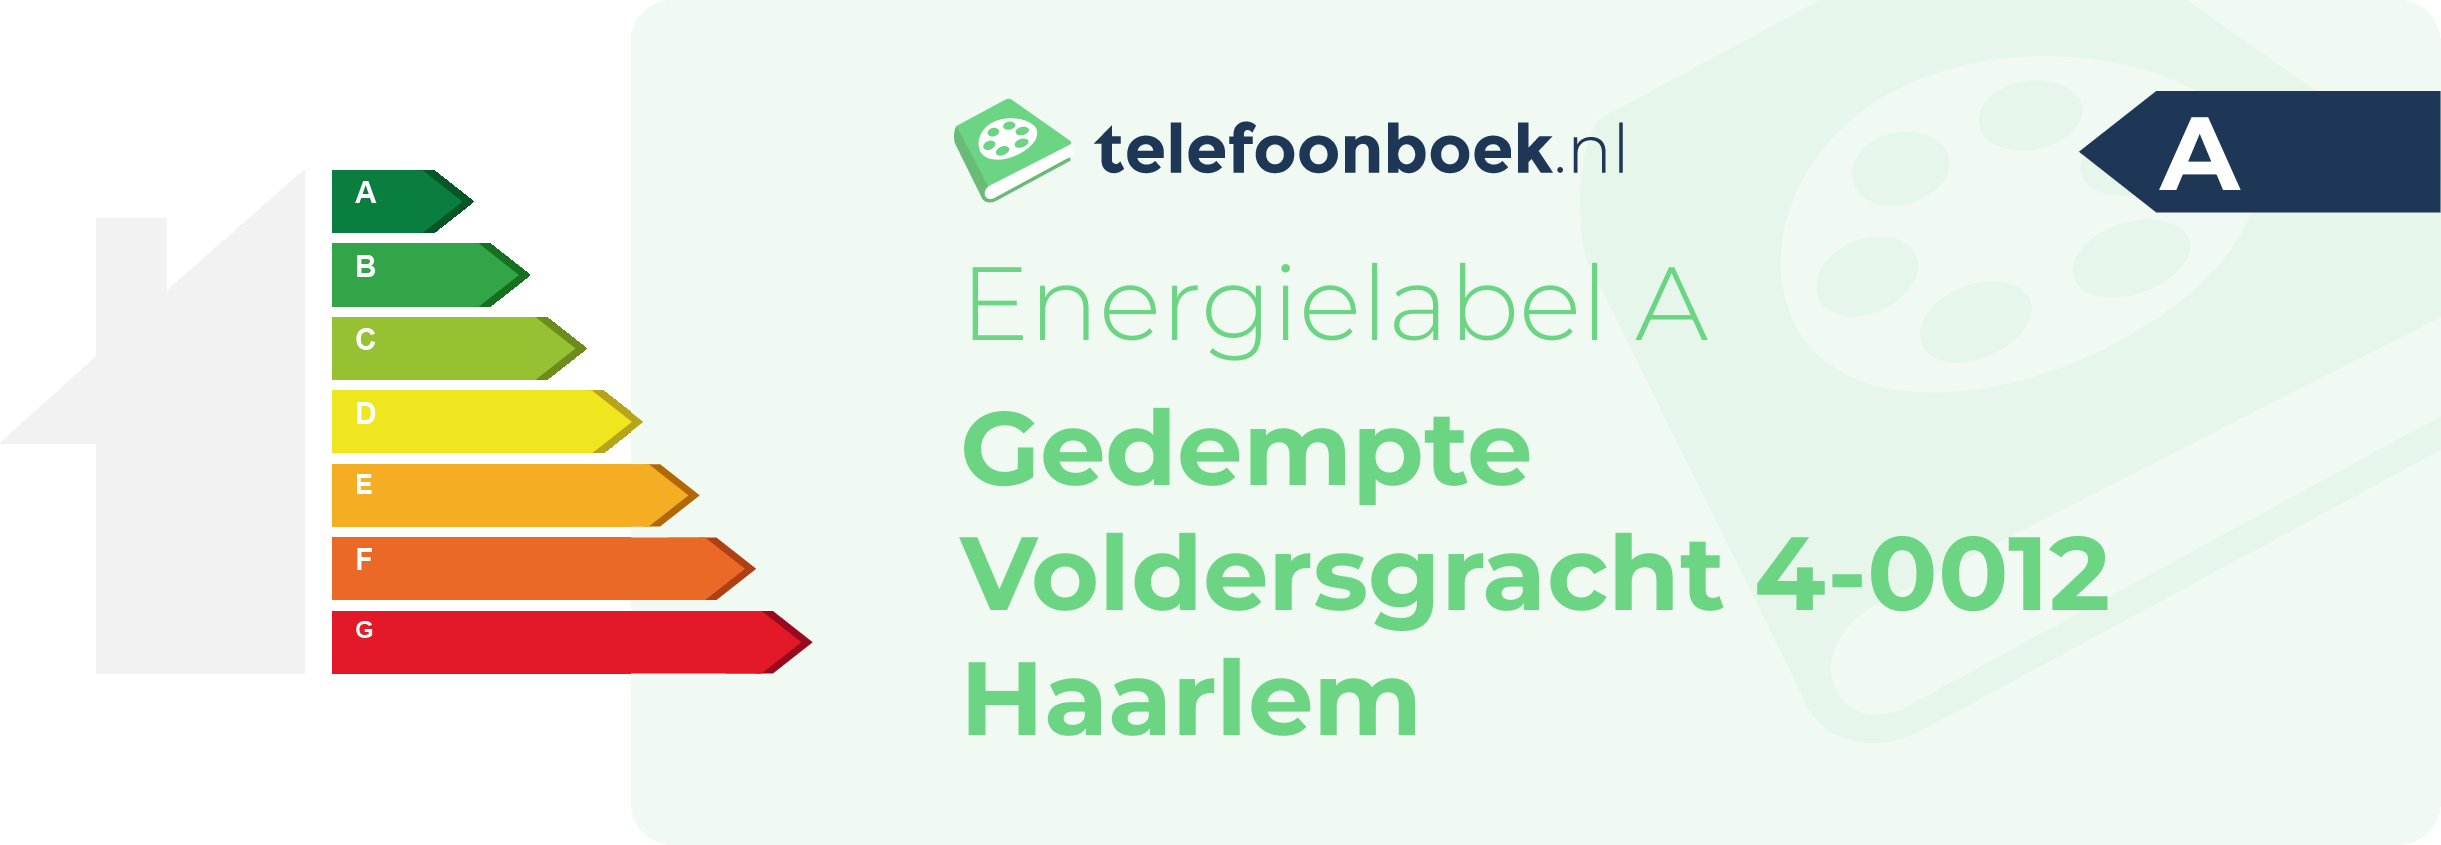 Energielabel Gedempte Voldersgracht 4-0012 Haarlem